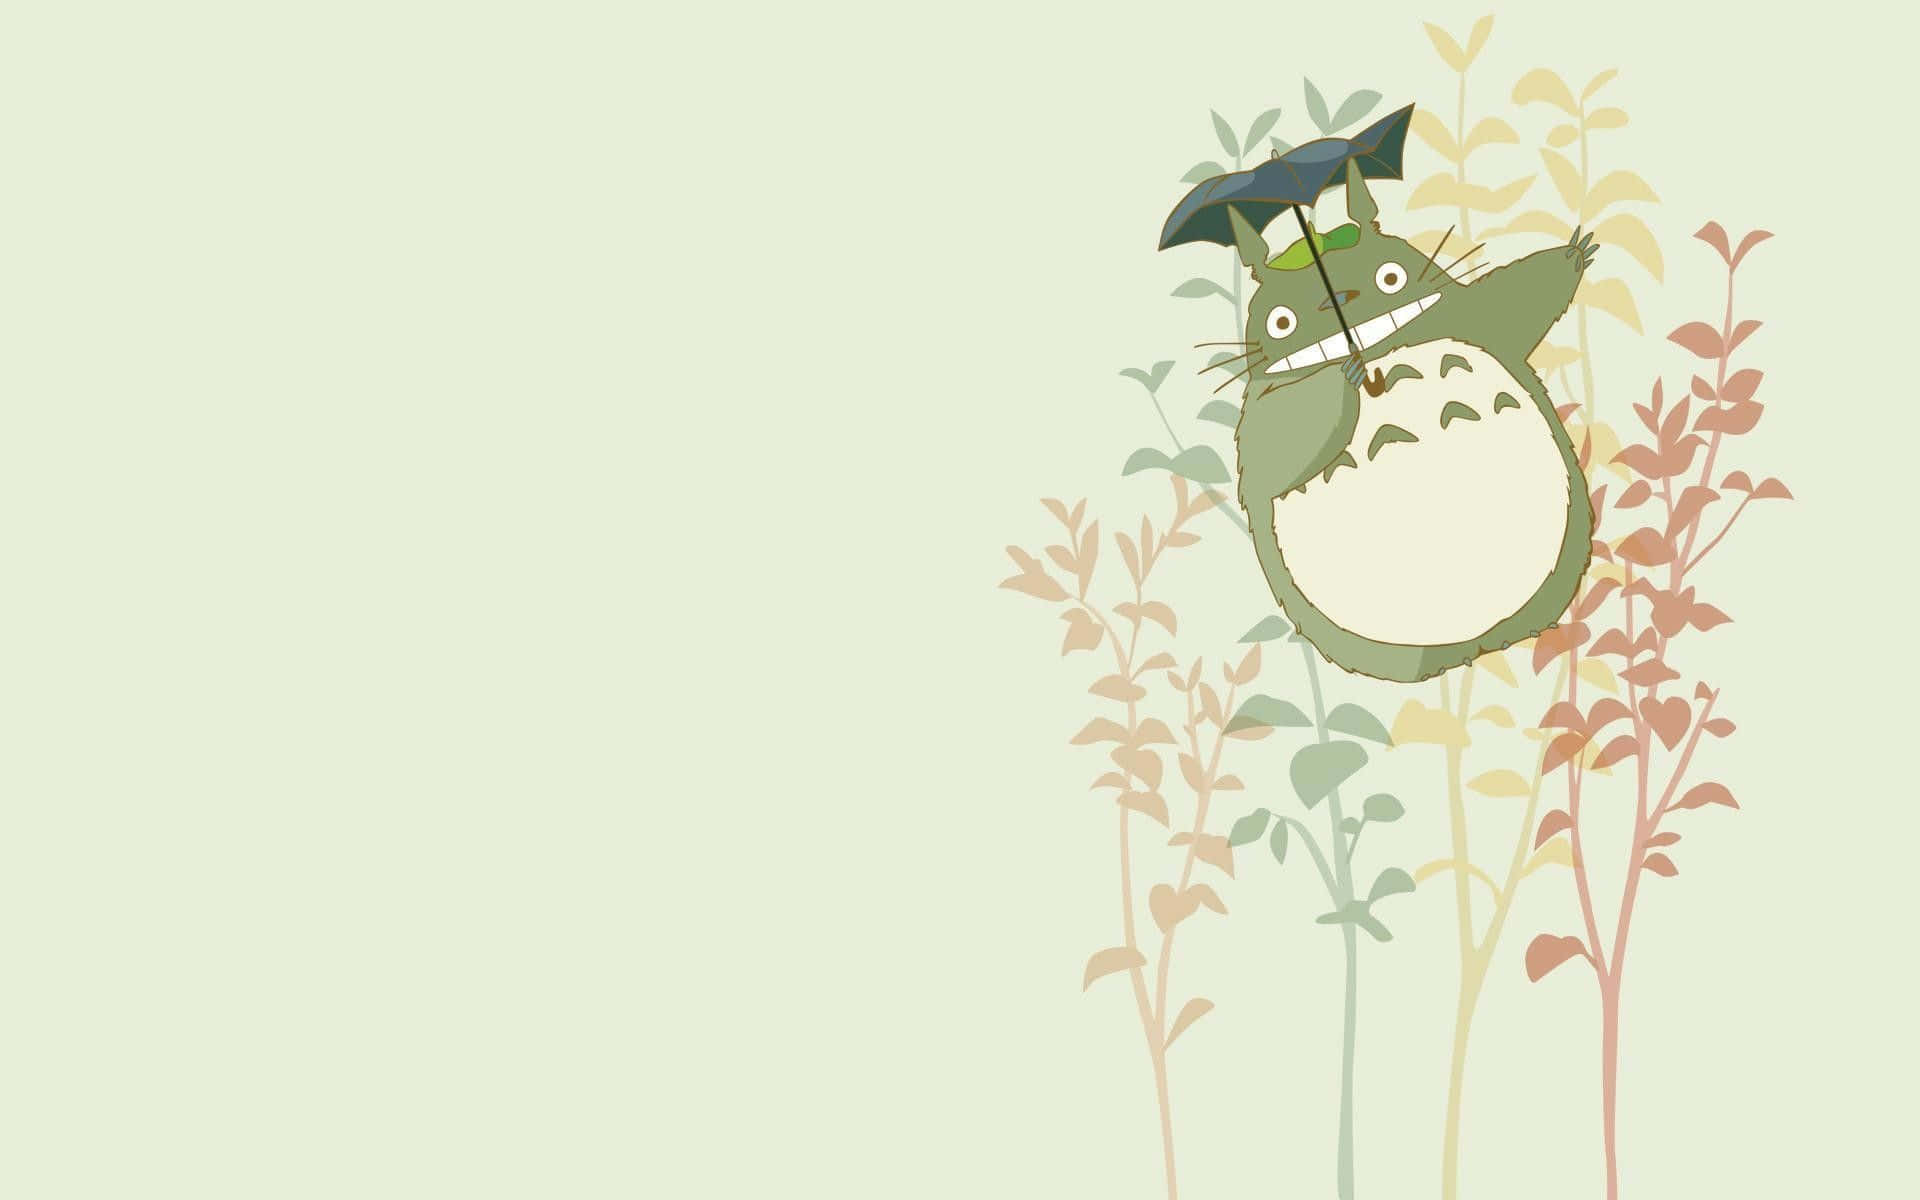 Studio Ghibli's My Neighbor Totoro: Themes of friendship and nature